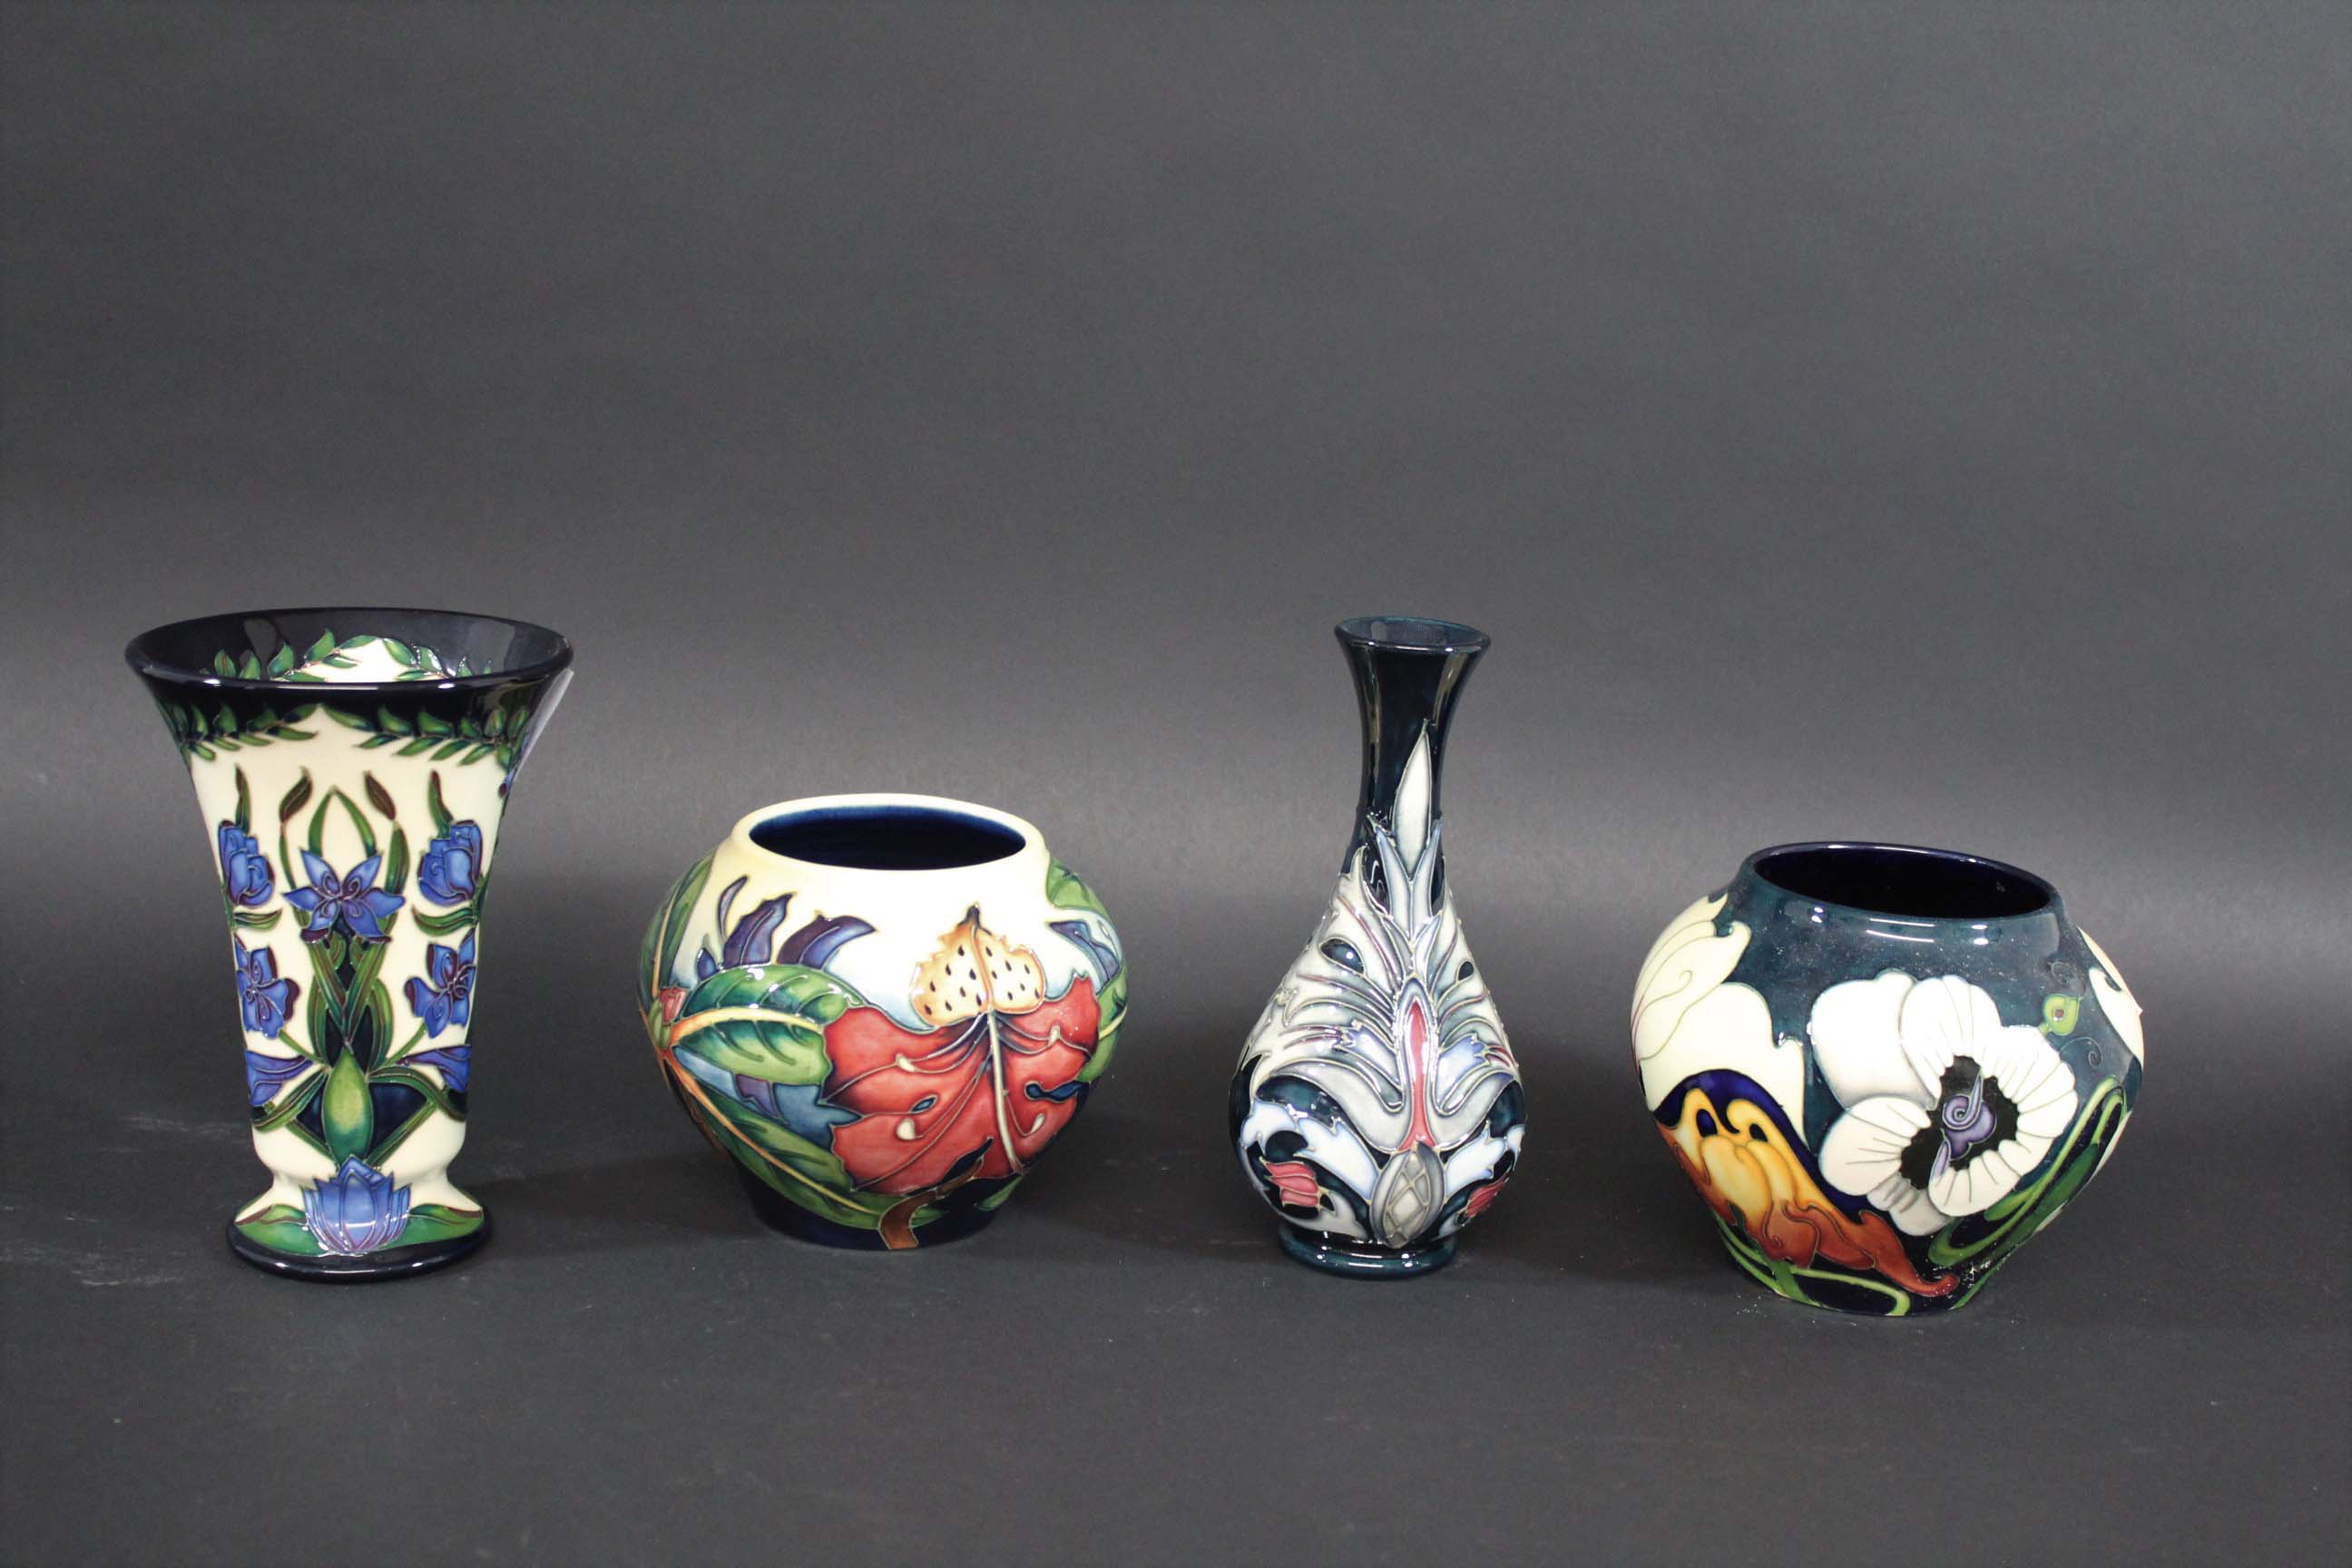 MOORCROFT VASES 4 modern Moorcroft vases including one in the Kaffir Lily design, designed by